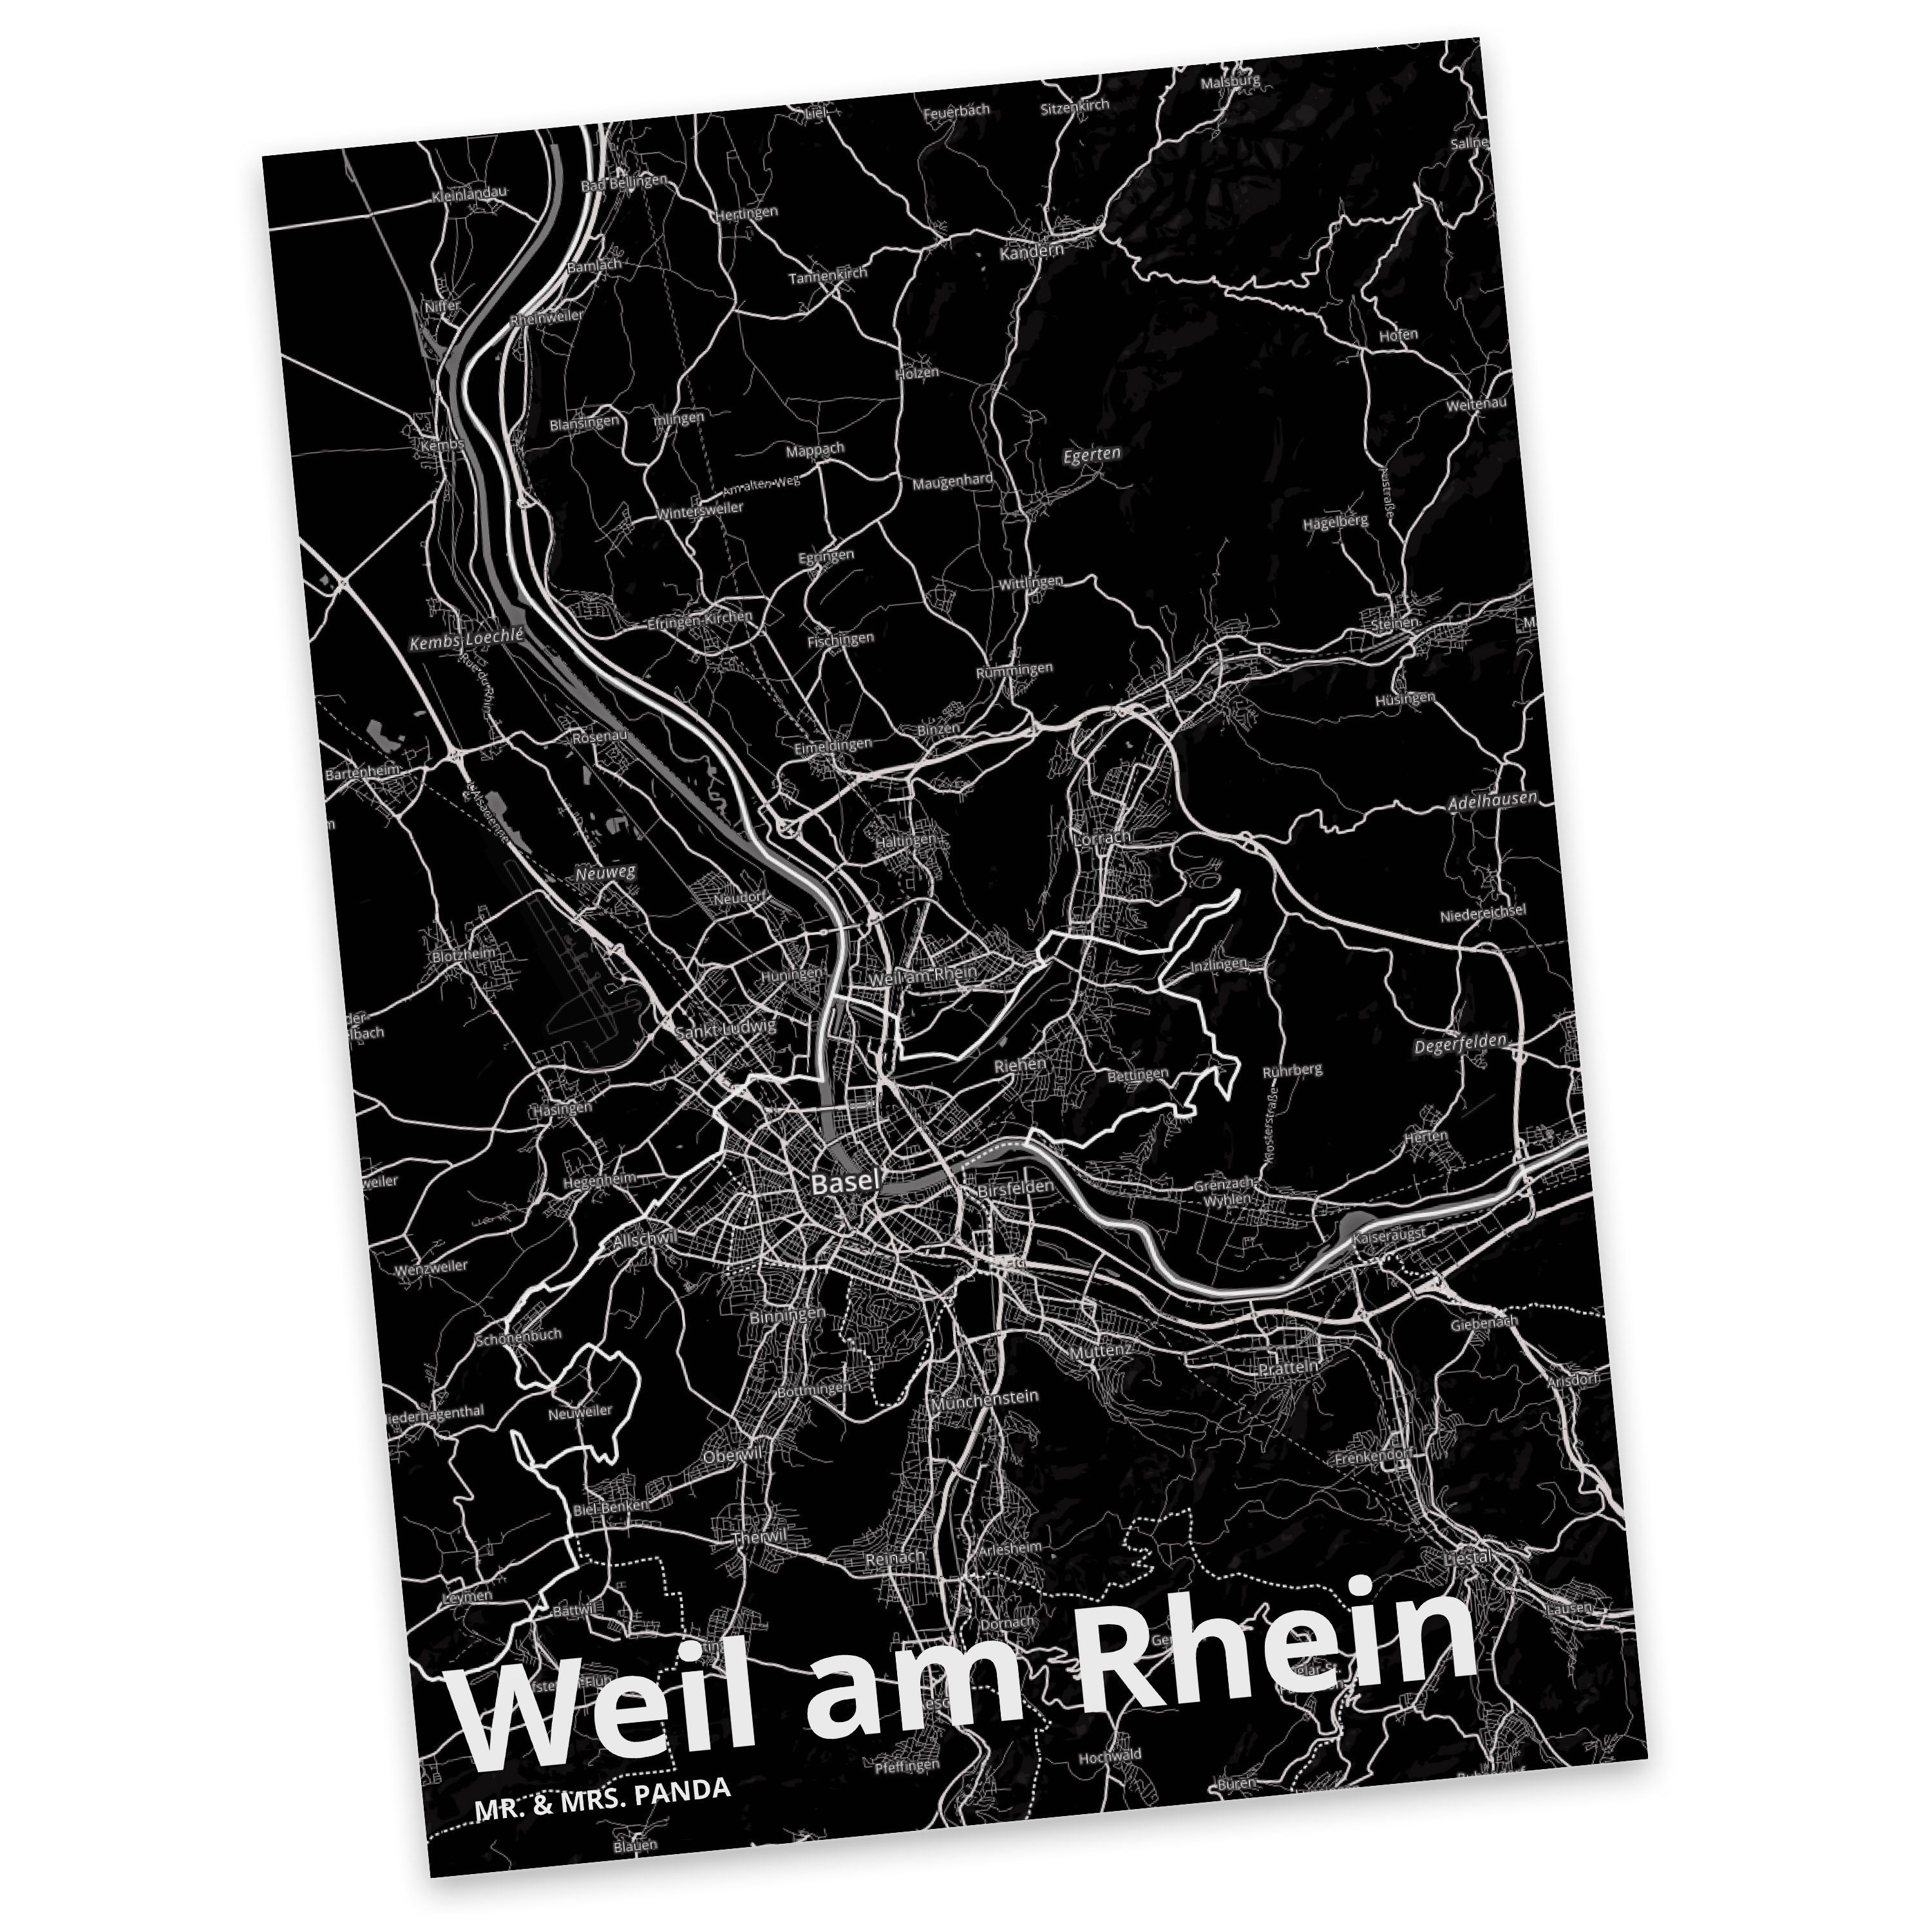 Mr. & Mrs. Panda Postkarte Weil am Rhein - Geschenk, Ansichtskarte, Dorf, Dankeskarte, Ort, Stad